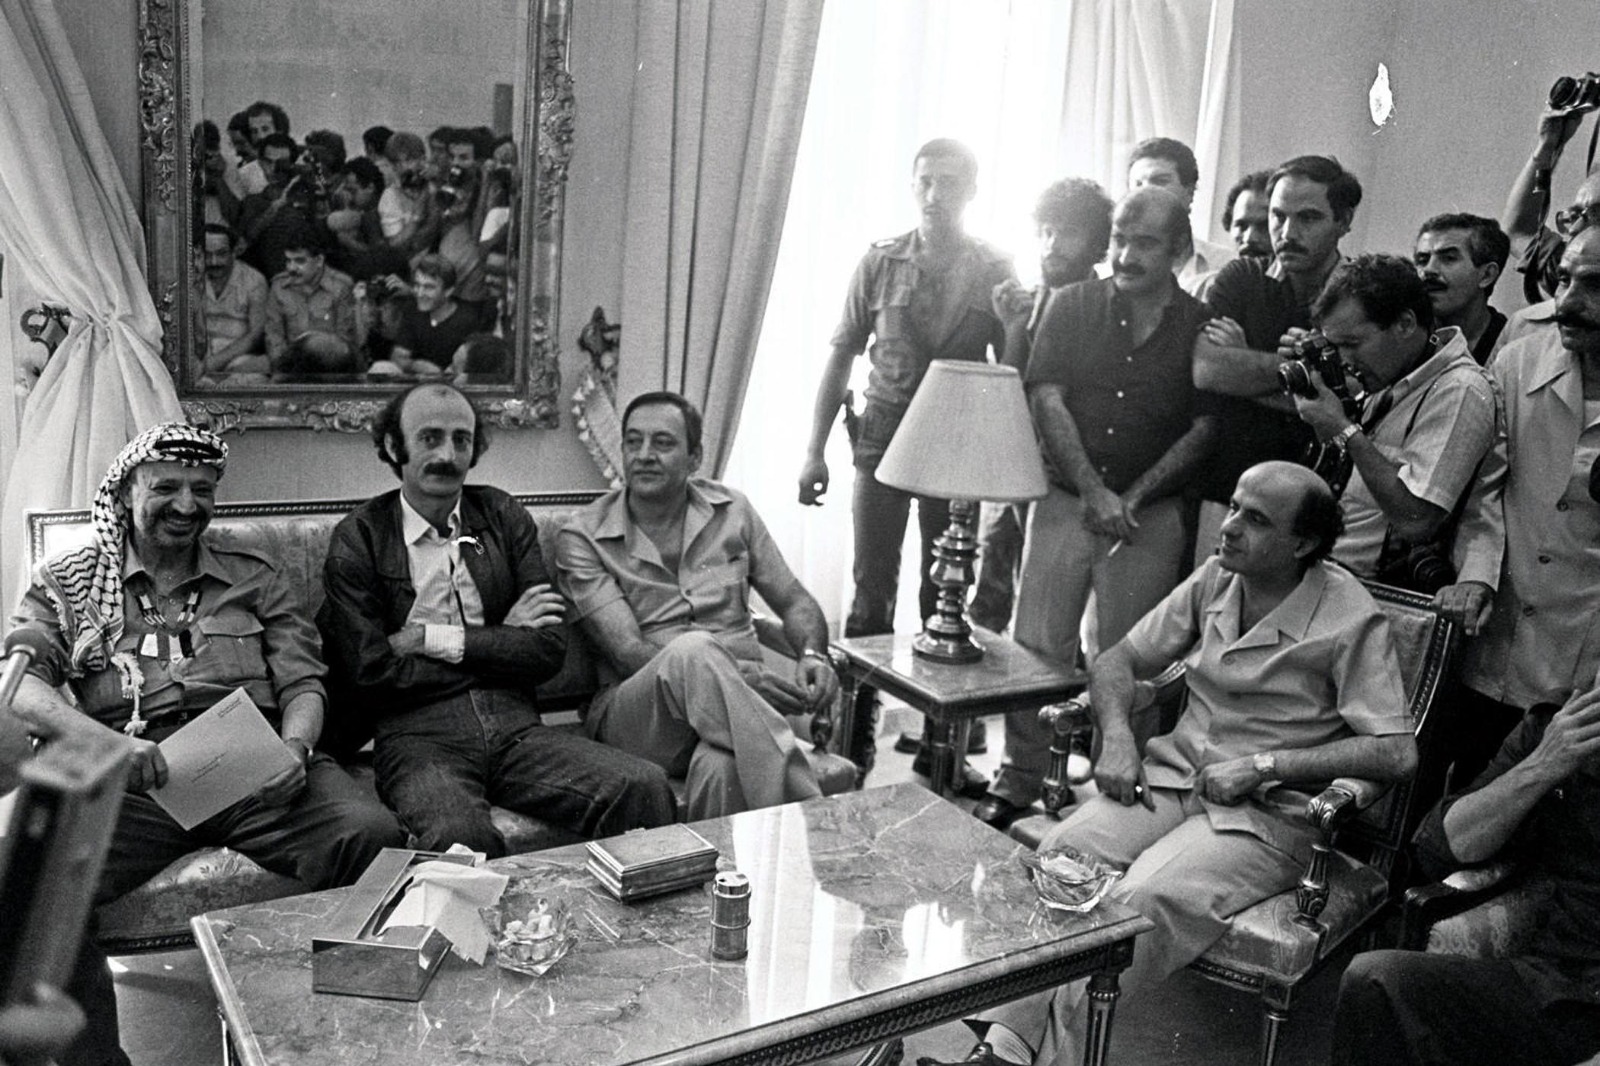 الزعيم الفلسطيني ياسر عرفات (يسار)، الزعيم اللبناني وليد جنبلاط (الثاني من اليسار)، رئيس حركة أمل الشيعية نبيه بري (الثالث من اليسار) ورئيس منظمة العمل الشيوعي محسن إبراهيم (يمين) خلال حفل توديع الزعيم الفلسطيني في بيروت، 30 أغسطس 1982